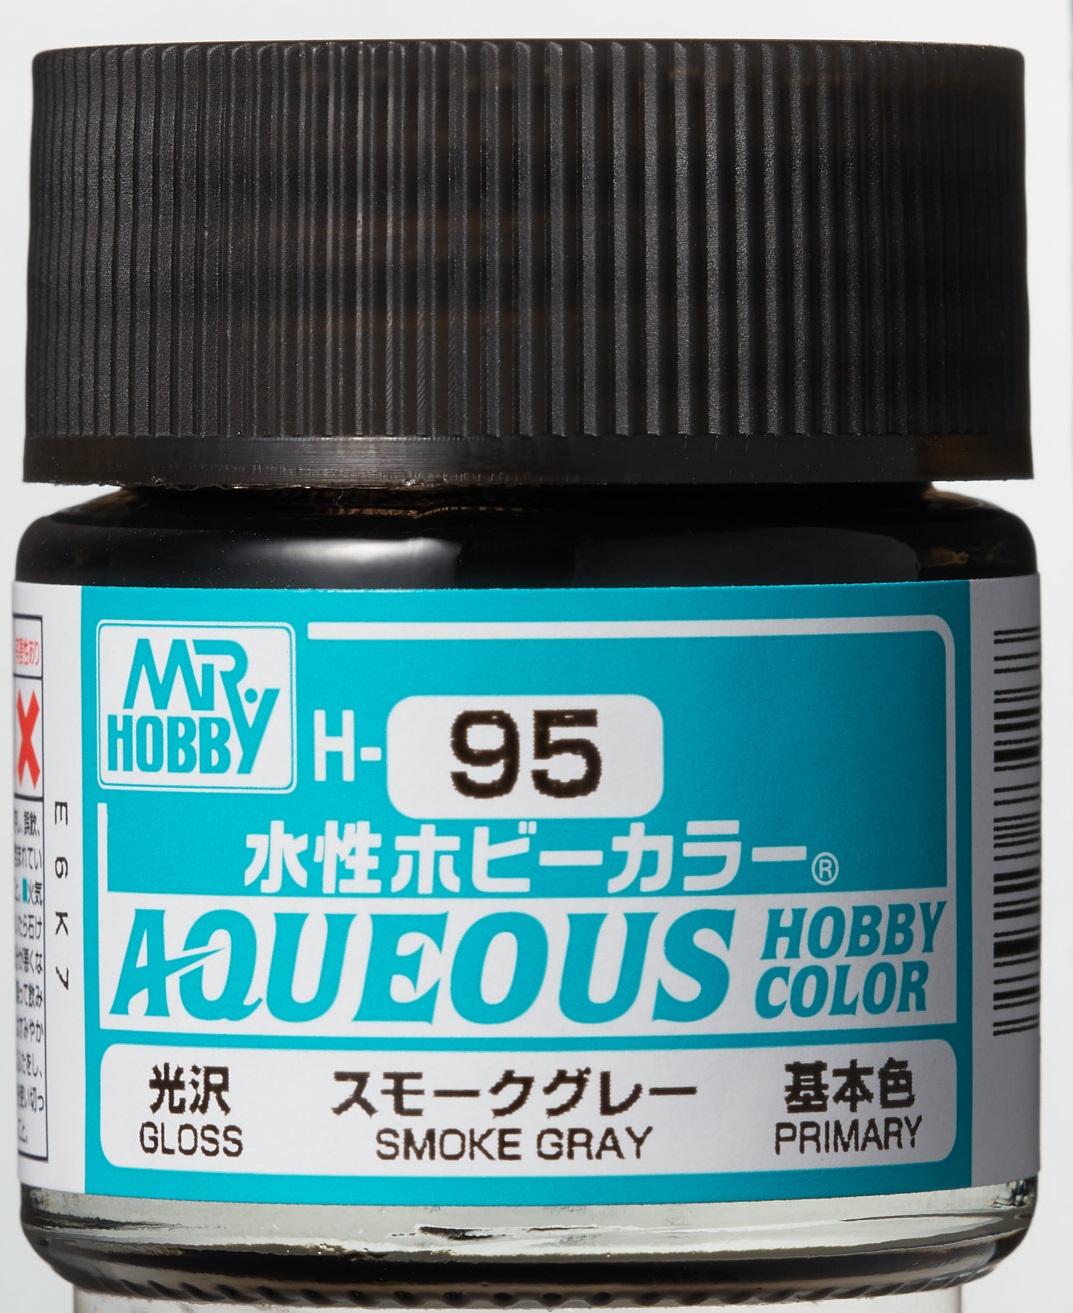 Mr. Aqueous Hobby Color - Smoke Gray - H95 - Rauch Grau Transparent